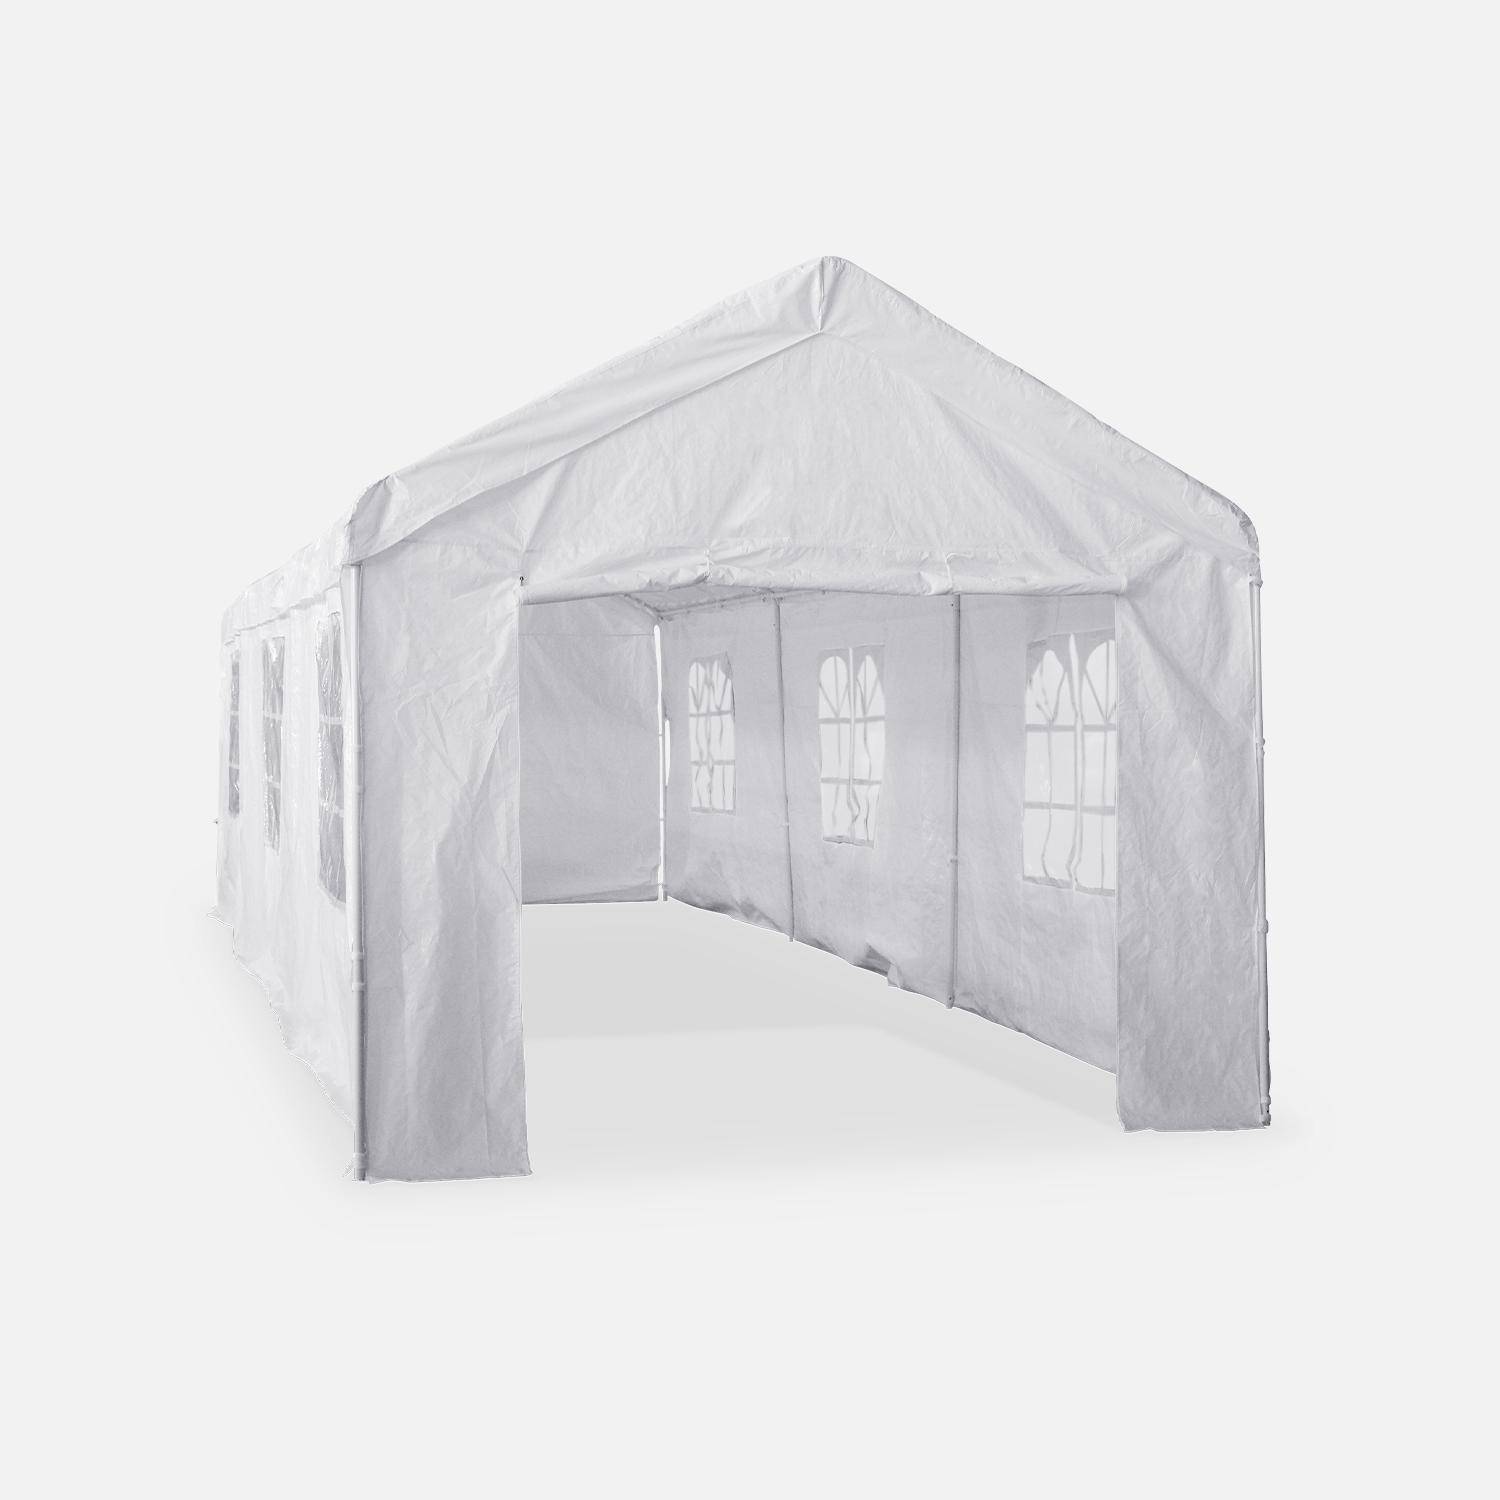 Tenda de festa - Burdigala 3x9m - Branca, conectores metálicos, tenda de jardim ideal para utilizar como pavilhão, pérgola, tenda ou caramanchão Photo4